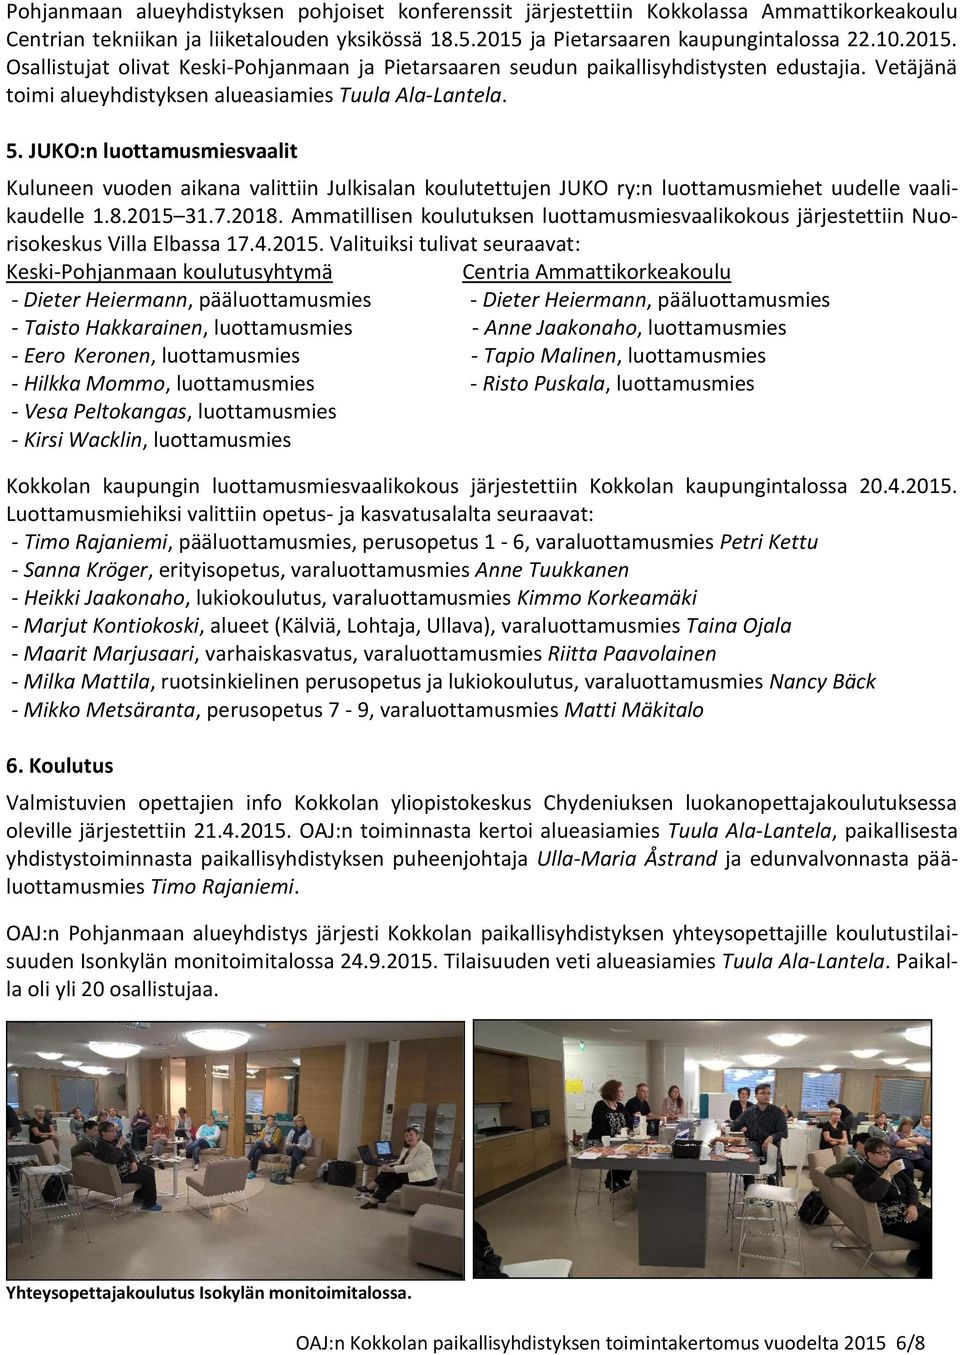 5. JUKO:n luottamusmiesvaalit Kuluneen vuoden aikana valittiin Julkisalan koulutettujen JUKO ry:n luottamusmiehet uudelle vaalikaudelle 1.8.2015 31.7.2018.